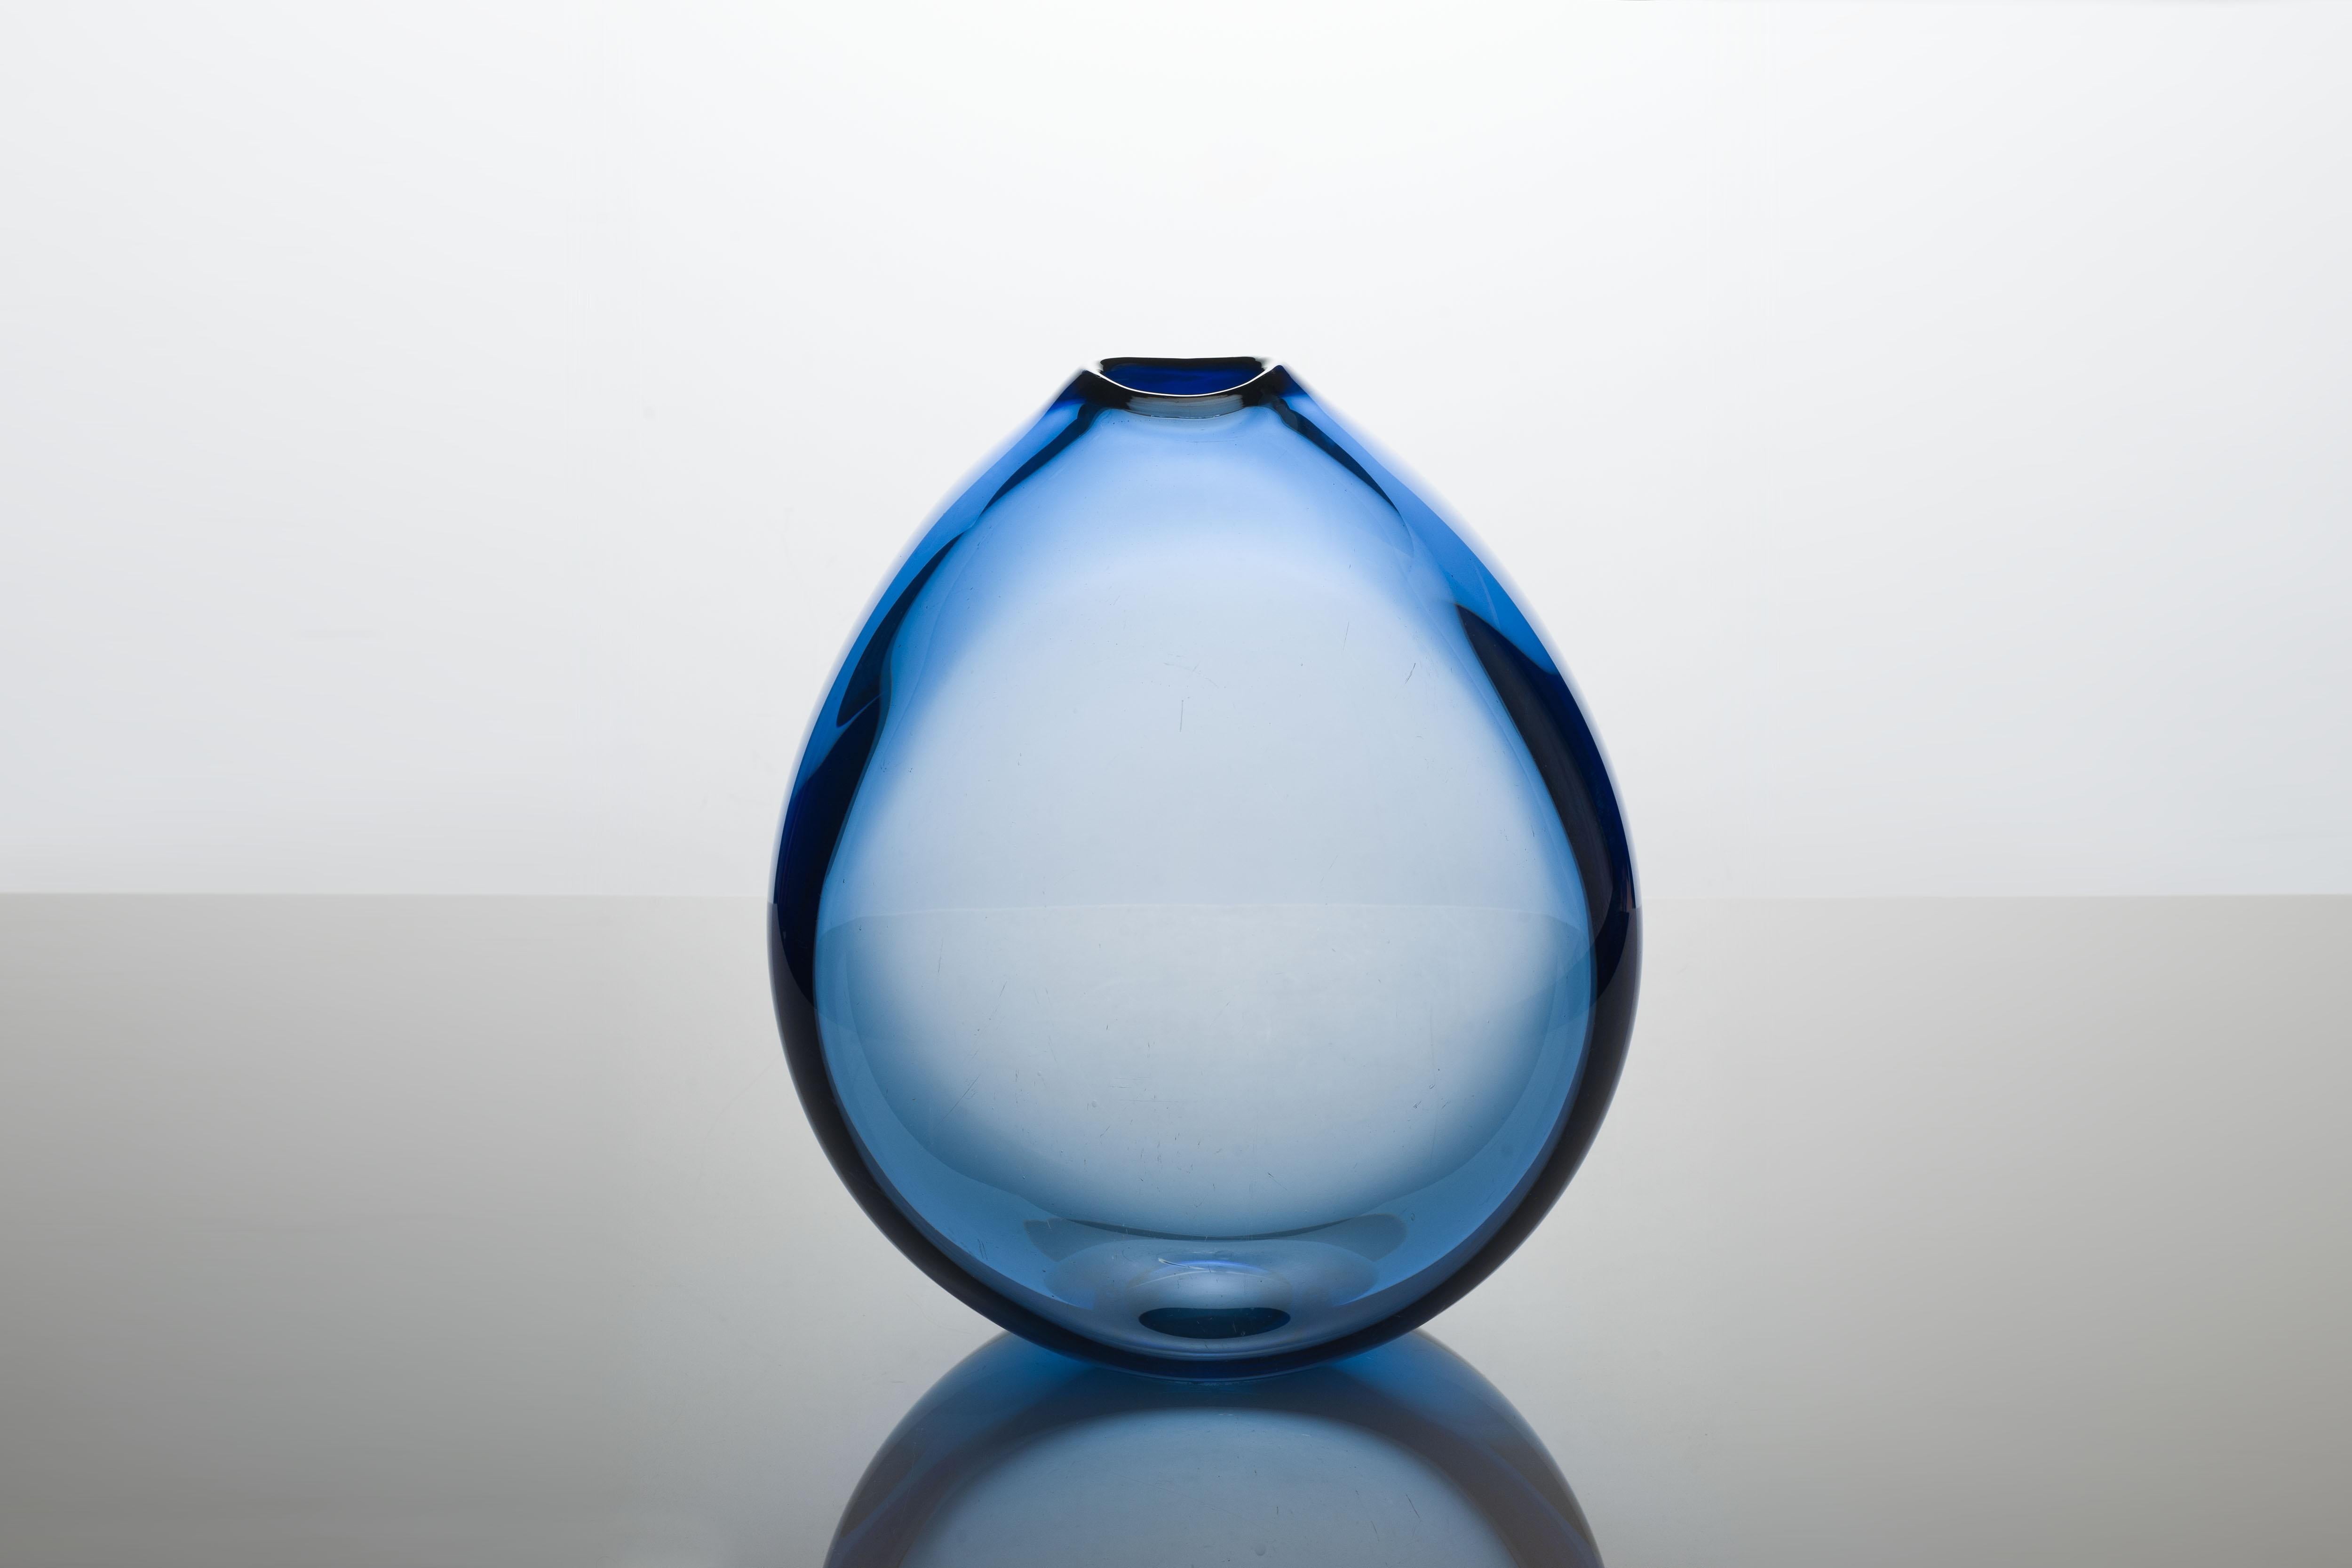 Scandinavian Modern Rare XL Sapphire Blue 'Dråbe' /Drop Vase by Per Lütken, Holmegaard from 1959 For Sale